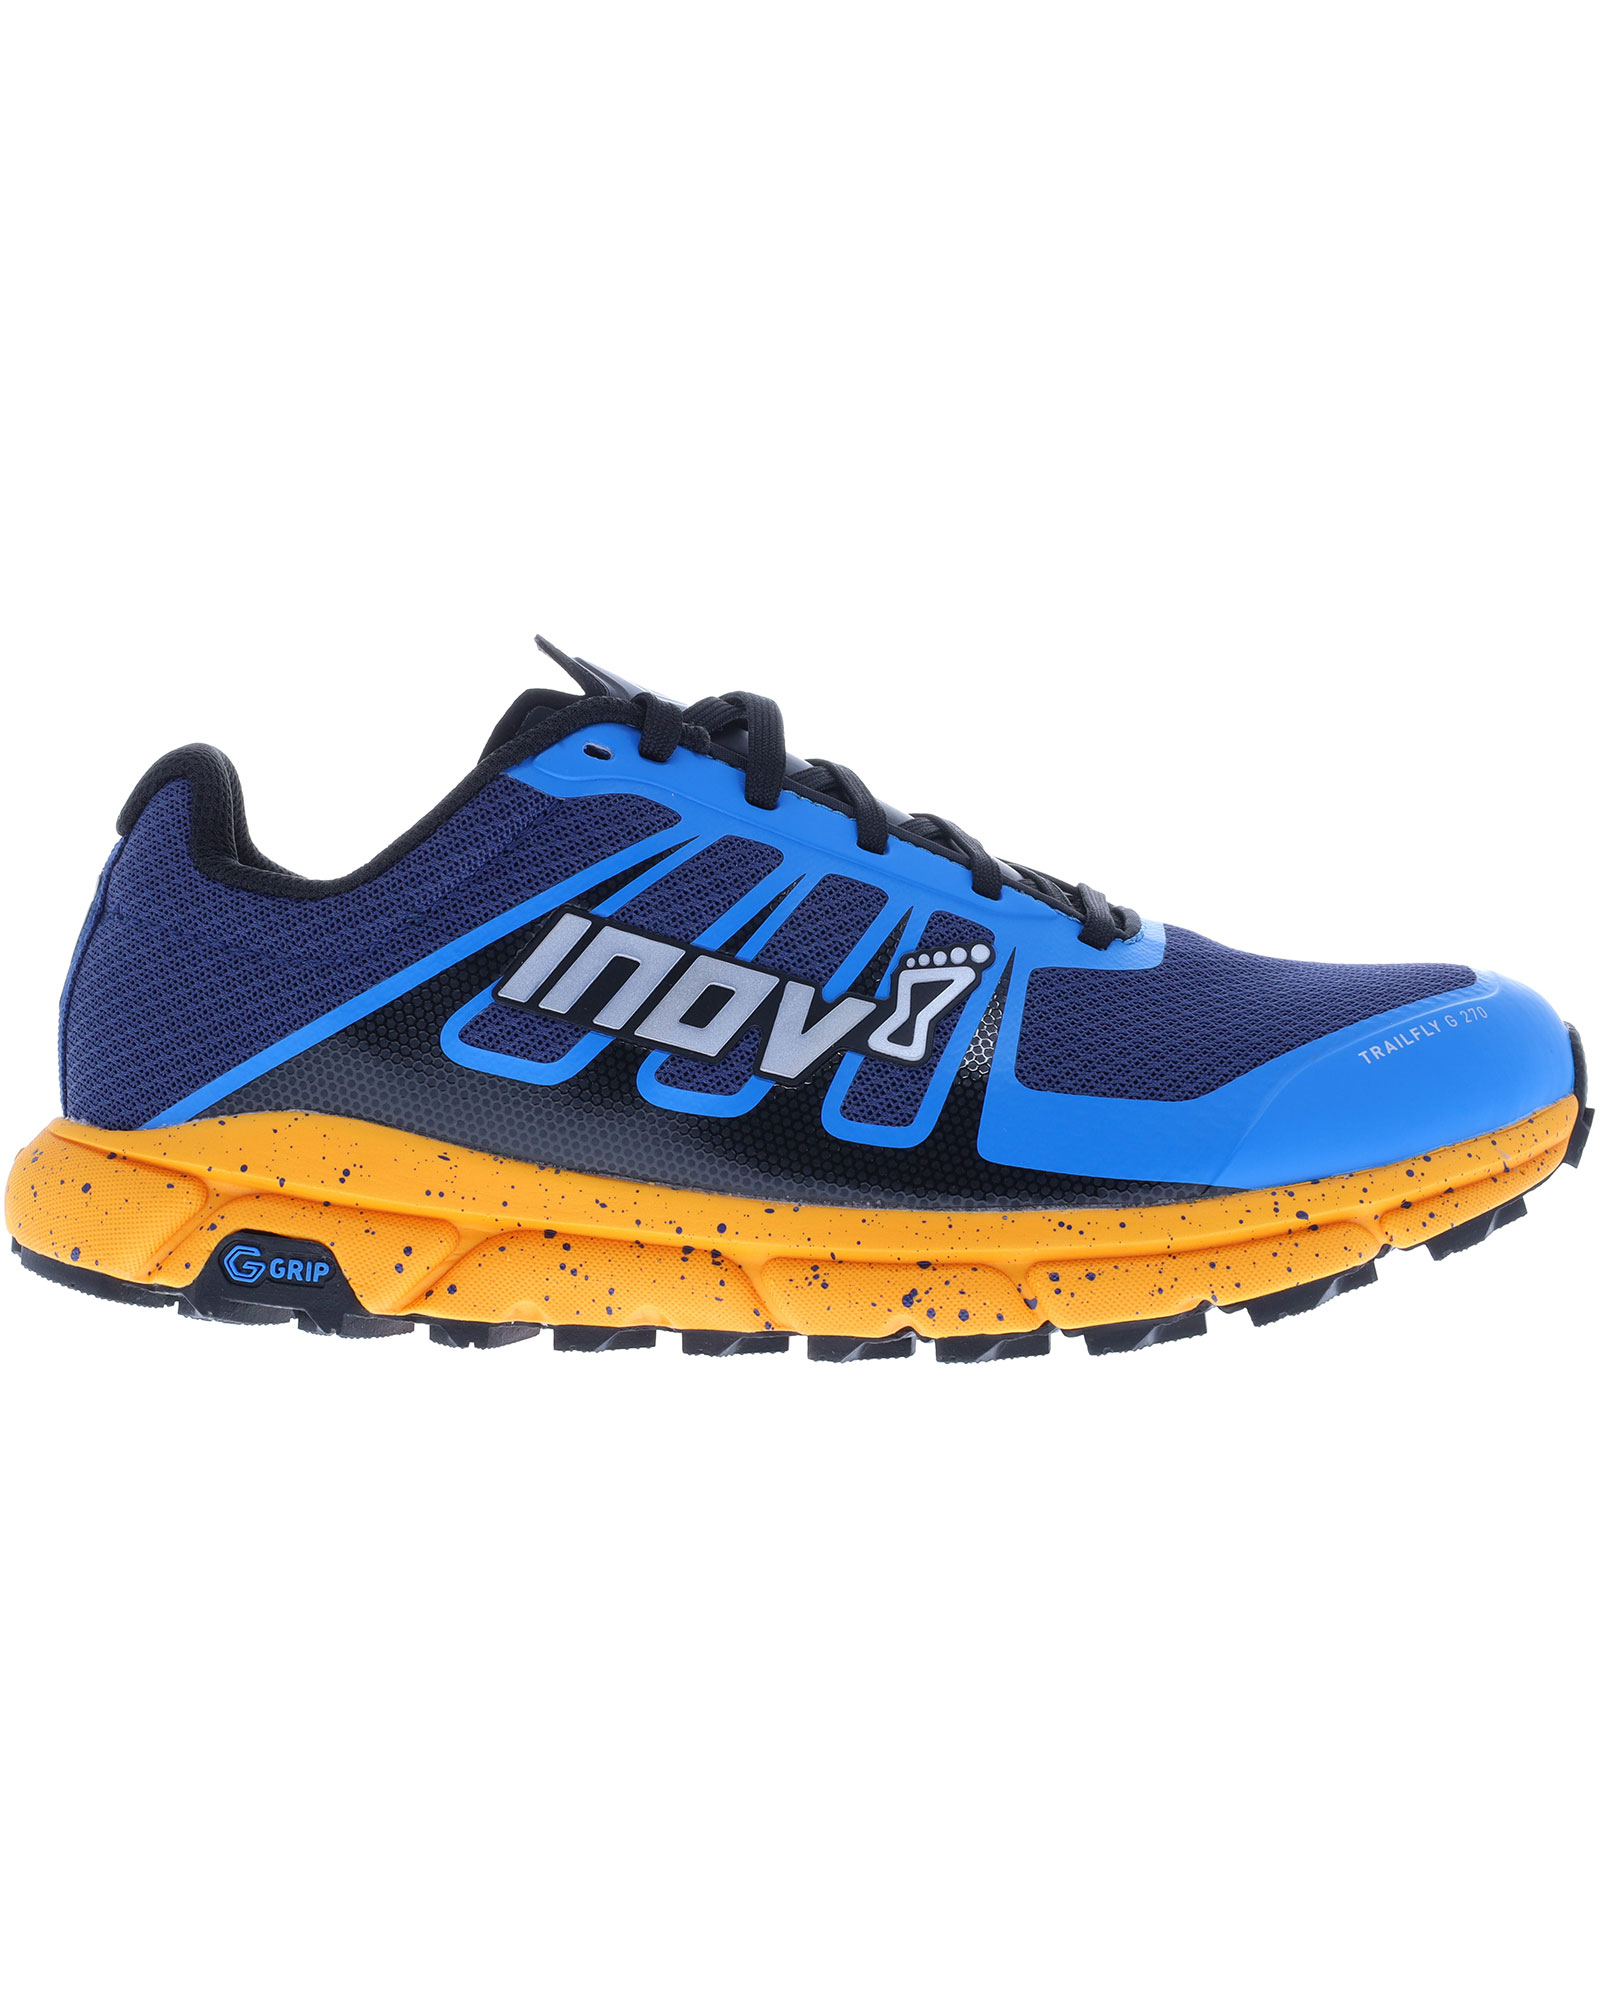 Inov 8 TrailFly G 270 V2 Men’s Trail Shoes - Blue/Nectar UK 11.5